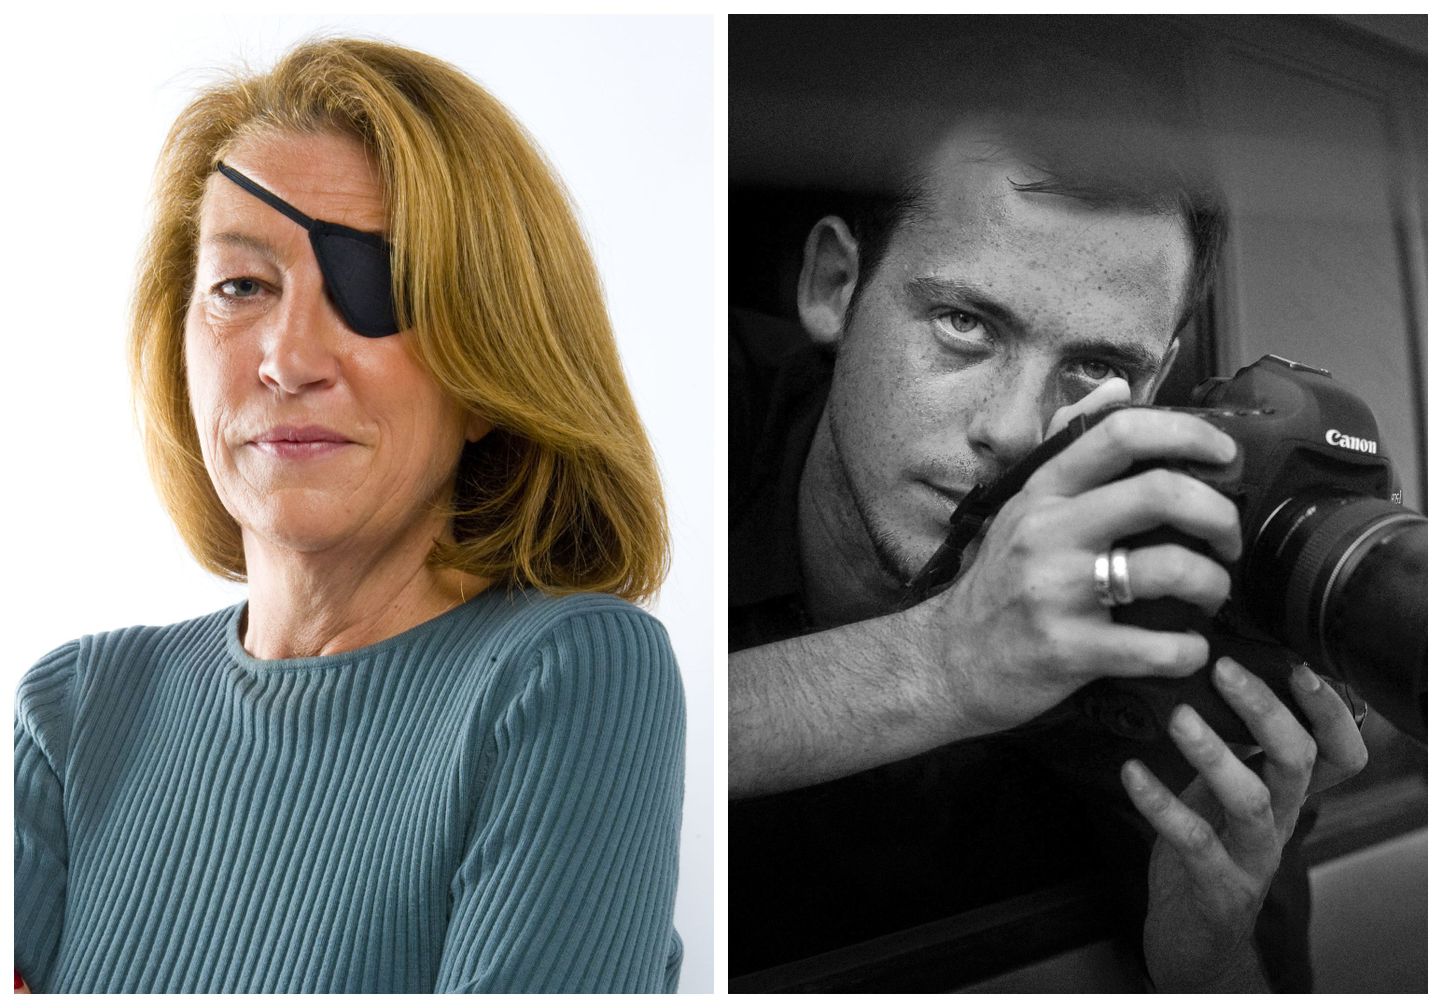 Ameerika ajakirjanik Marie Colvin ja Prantsuse fotograaf Remi Ochlik, kes hukkusid Süürias möödunud aasta oktoobris, kui valitsusväed pommitasid opositsiooni tugipunkti Homsis.